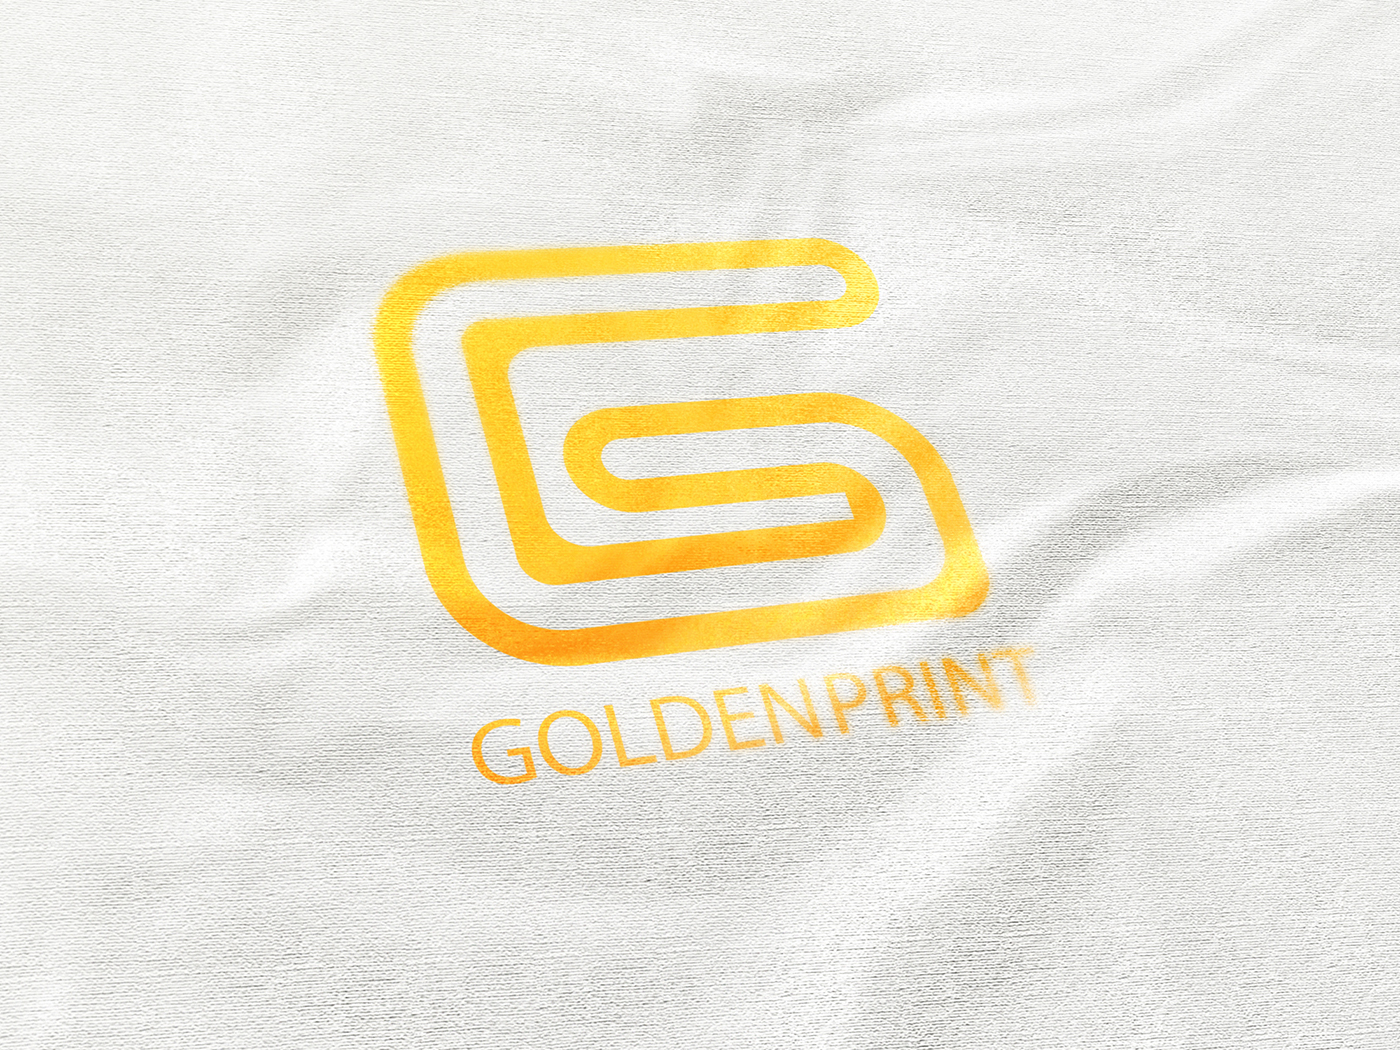 logo gold Printing branding 